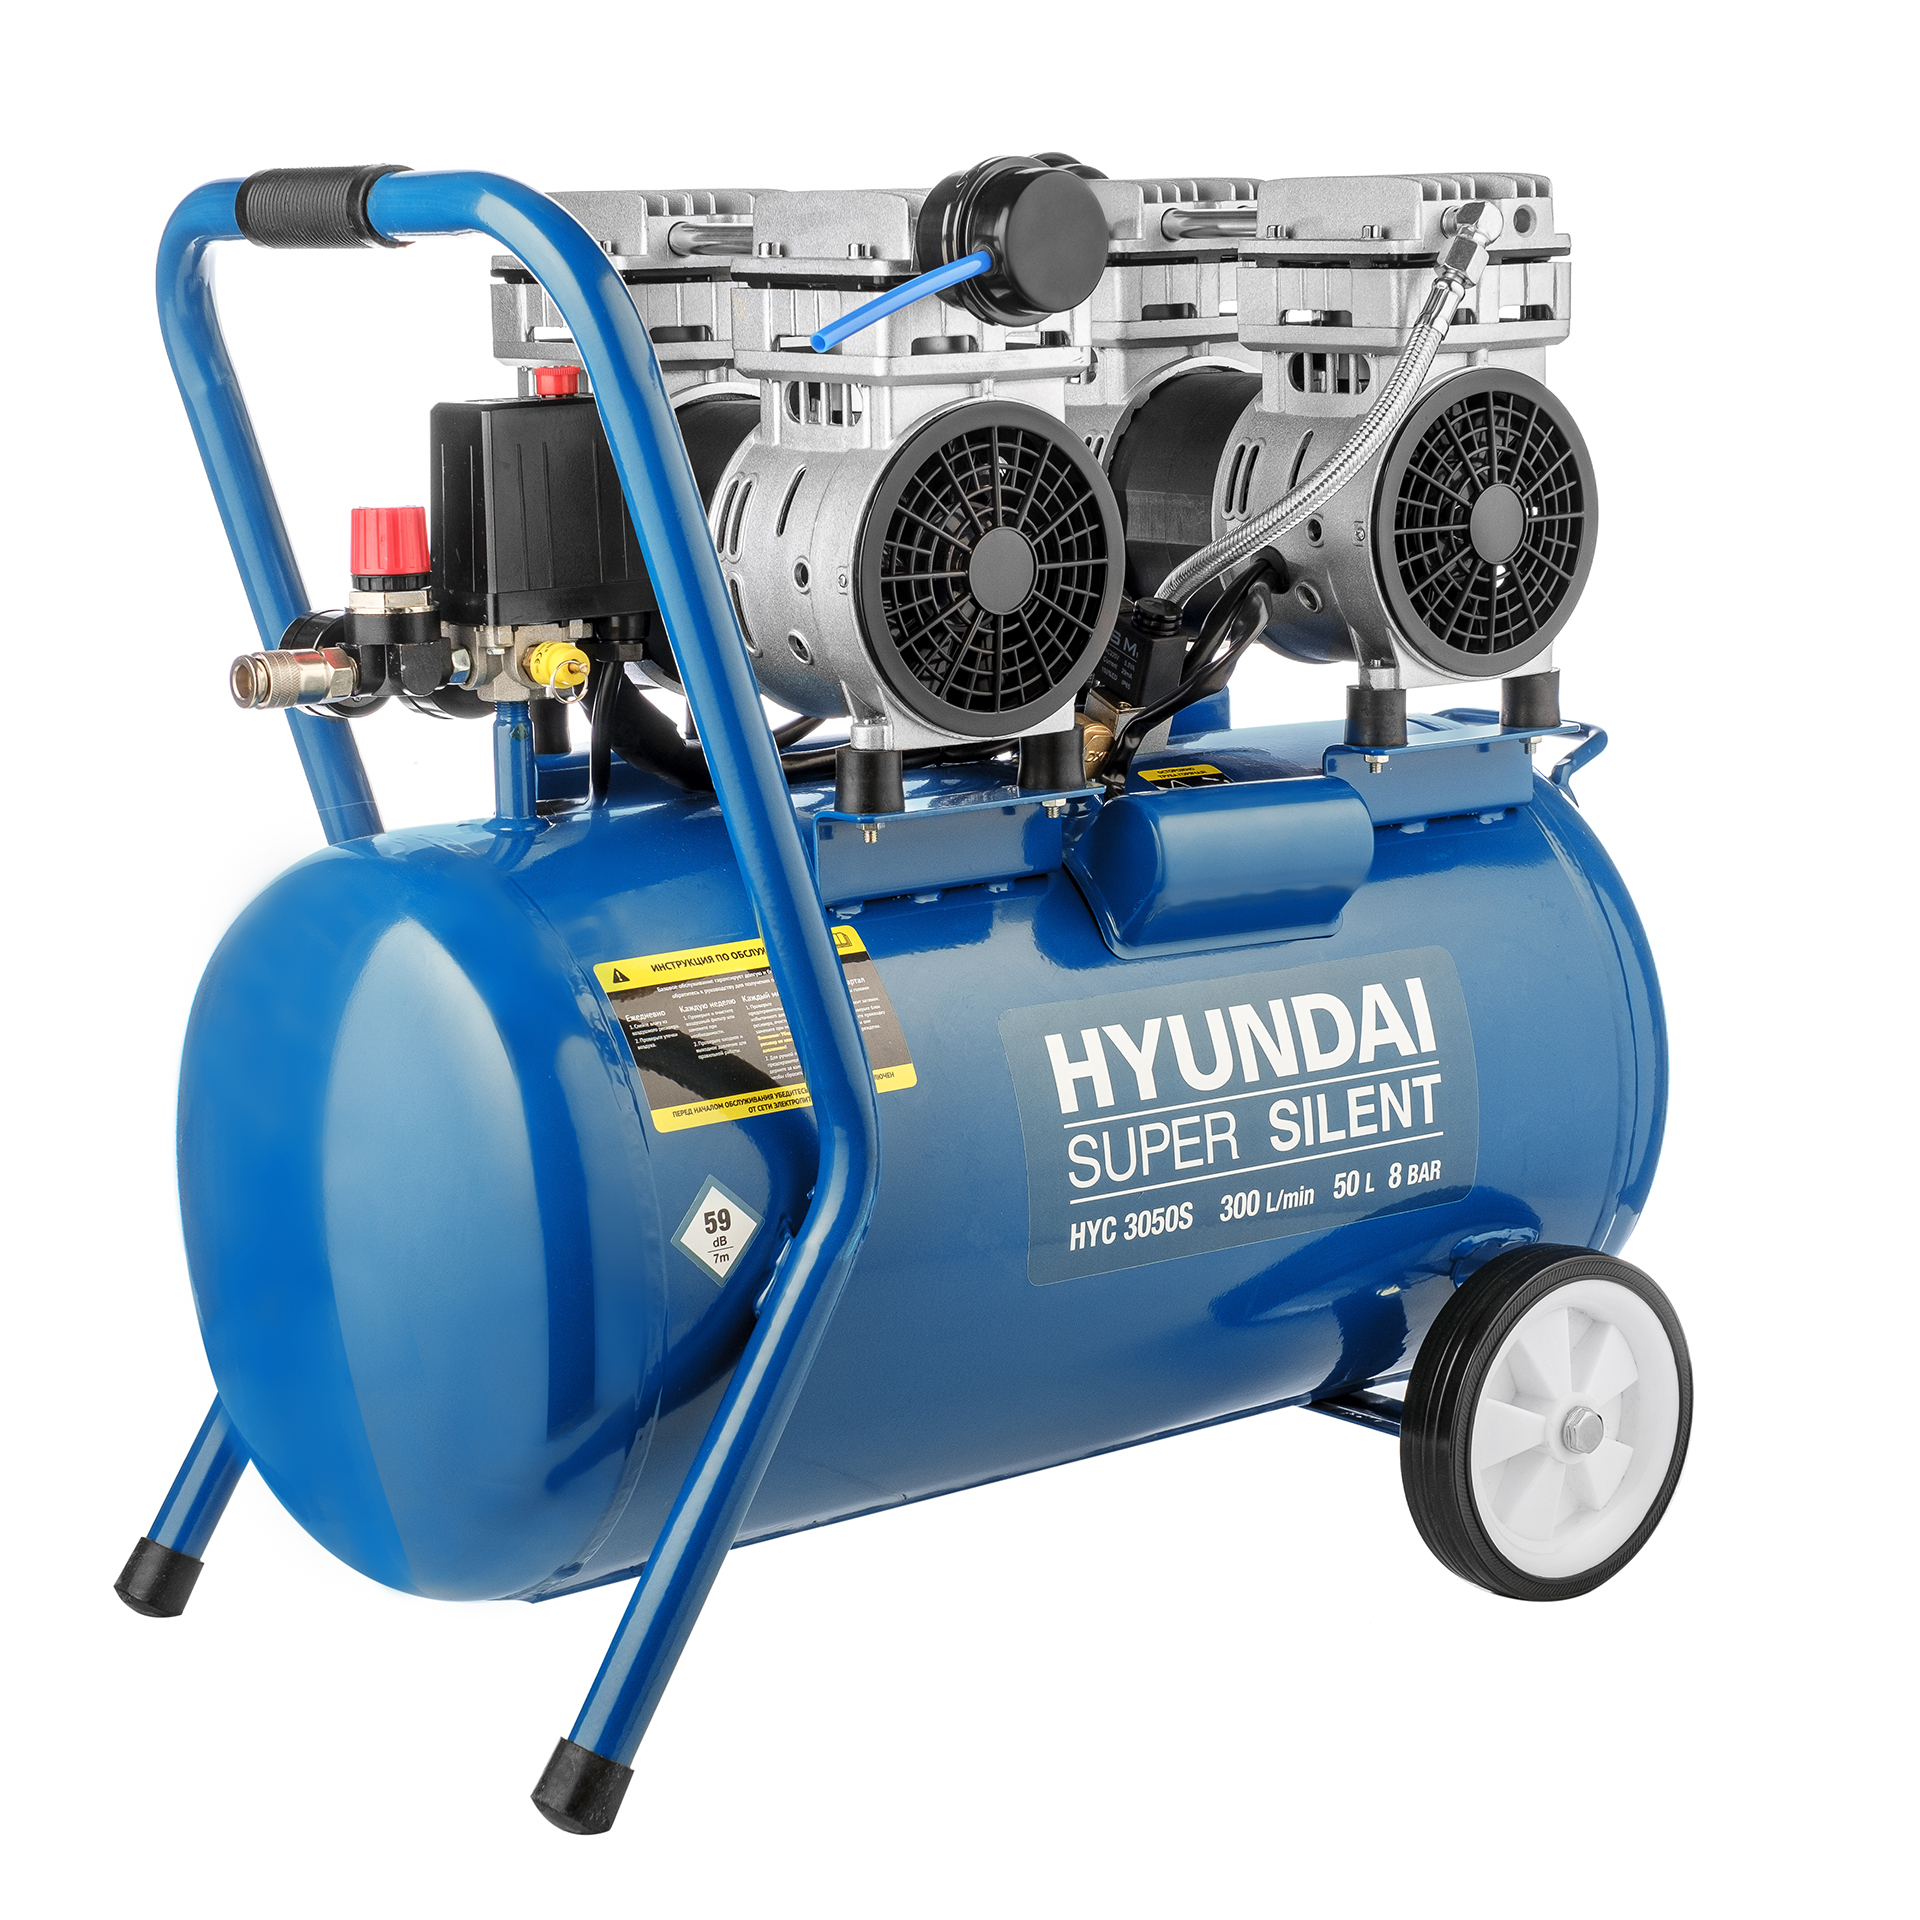 Воздушный компрессор Hyundai HYC 3050S воздушный компрессор sturm ac932100b 2400 вт100л370 л мин8 барманометррег давл ремень